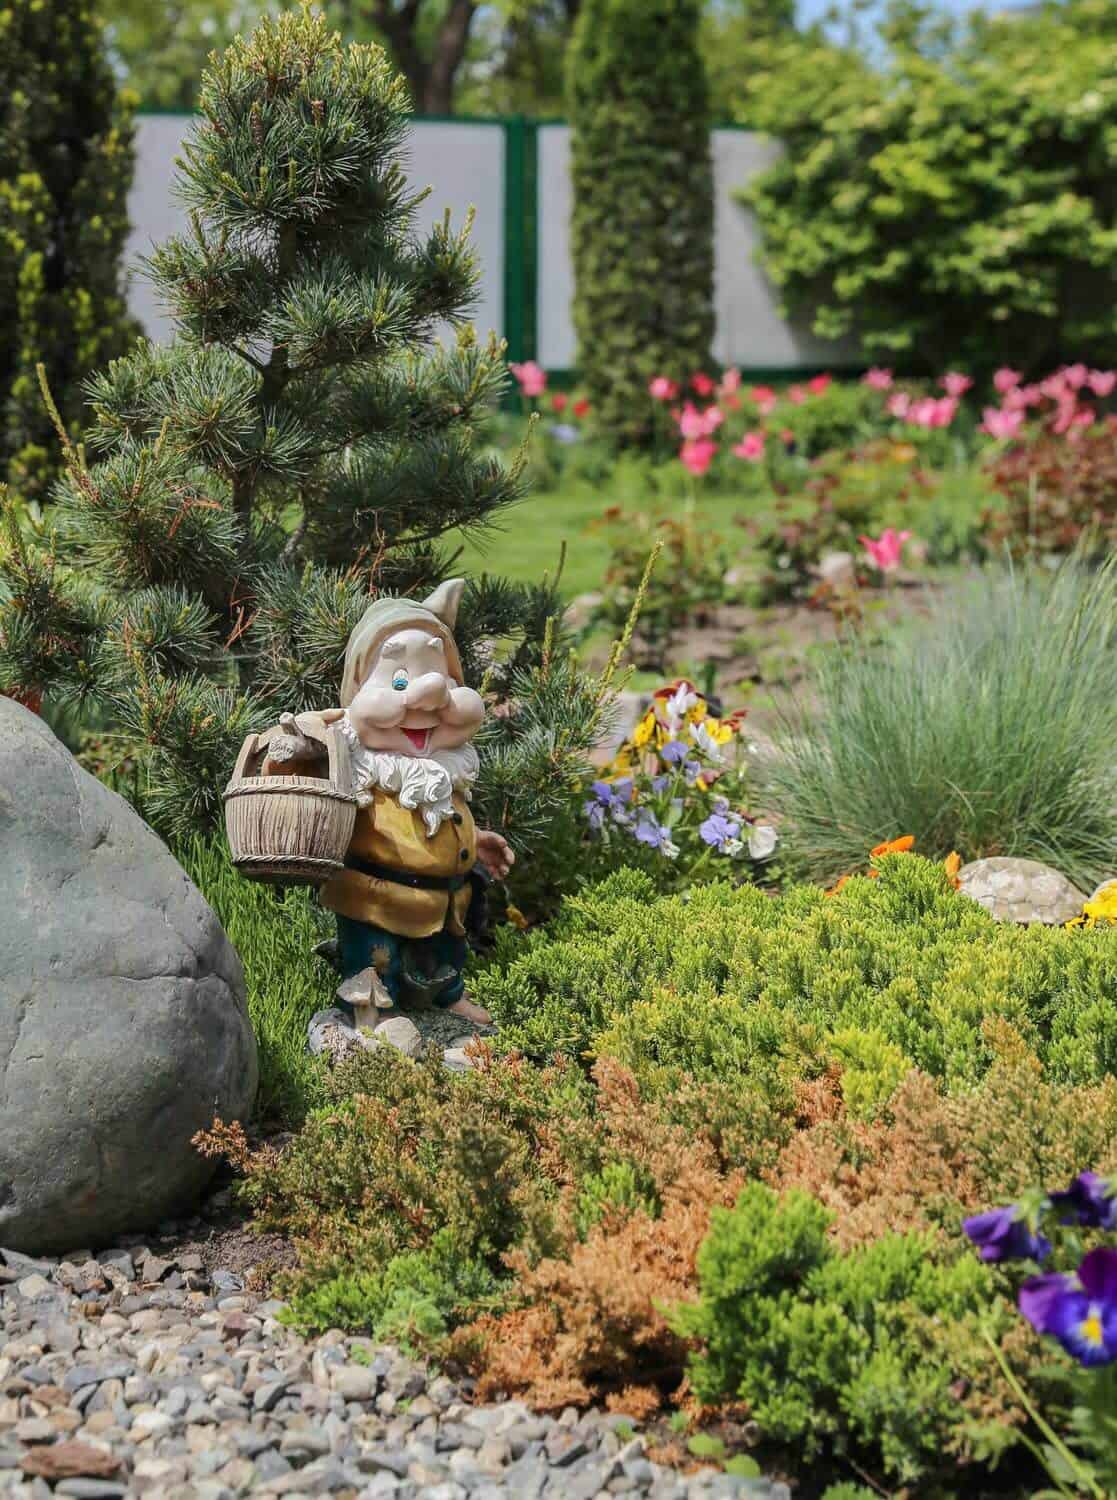 Elf statue in the garden